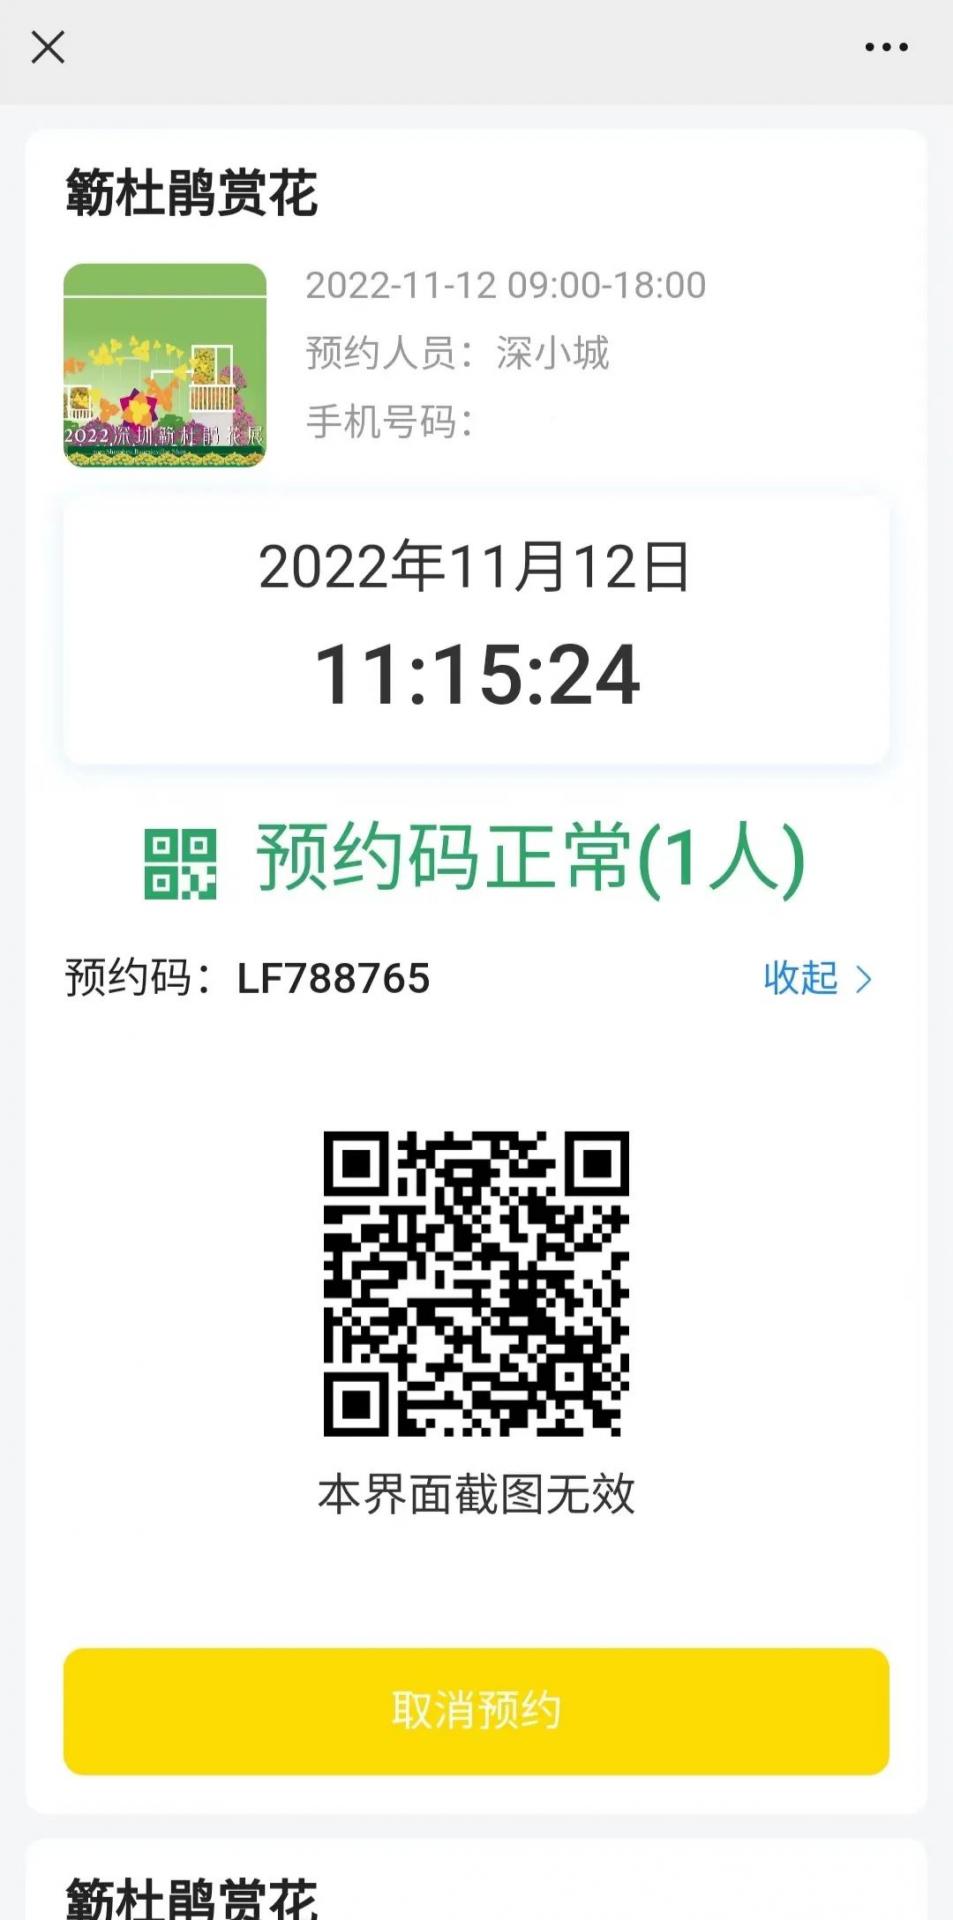 2022深圳簕杜鹃花展绽放莲花山公园，最全预约指南看这里，记得绿色出行！